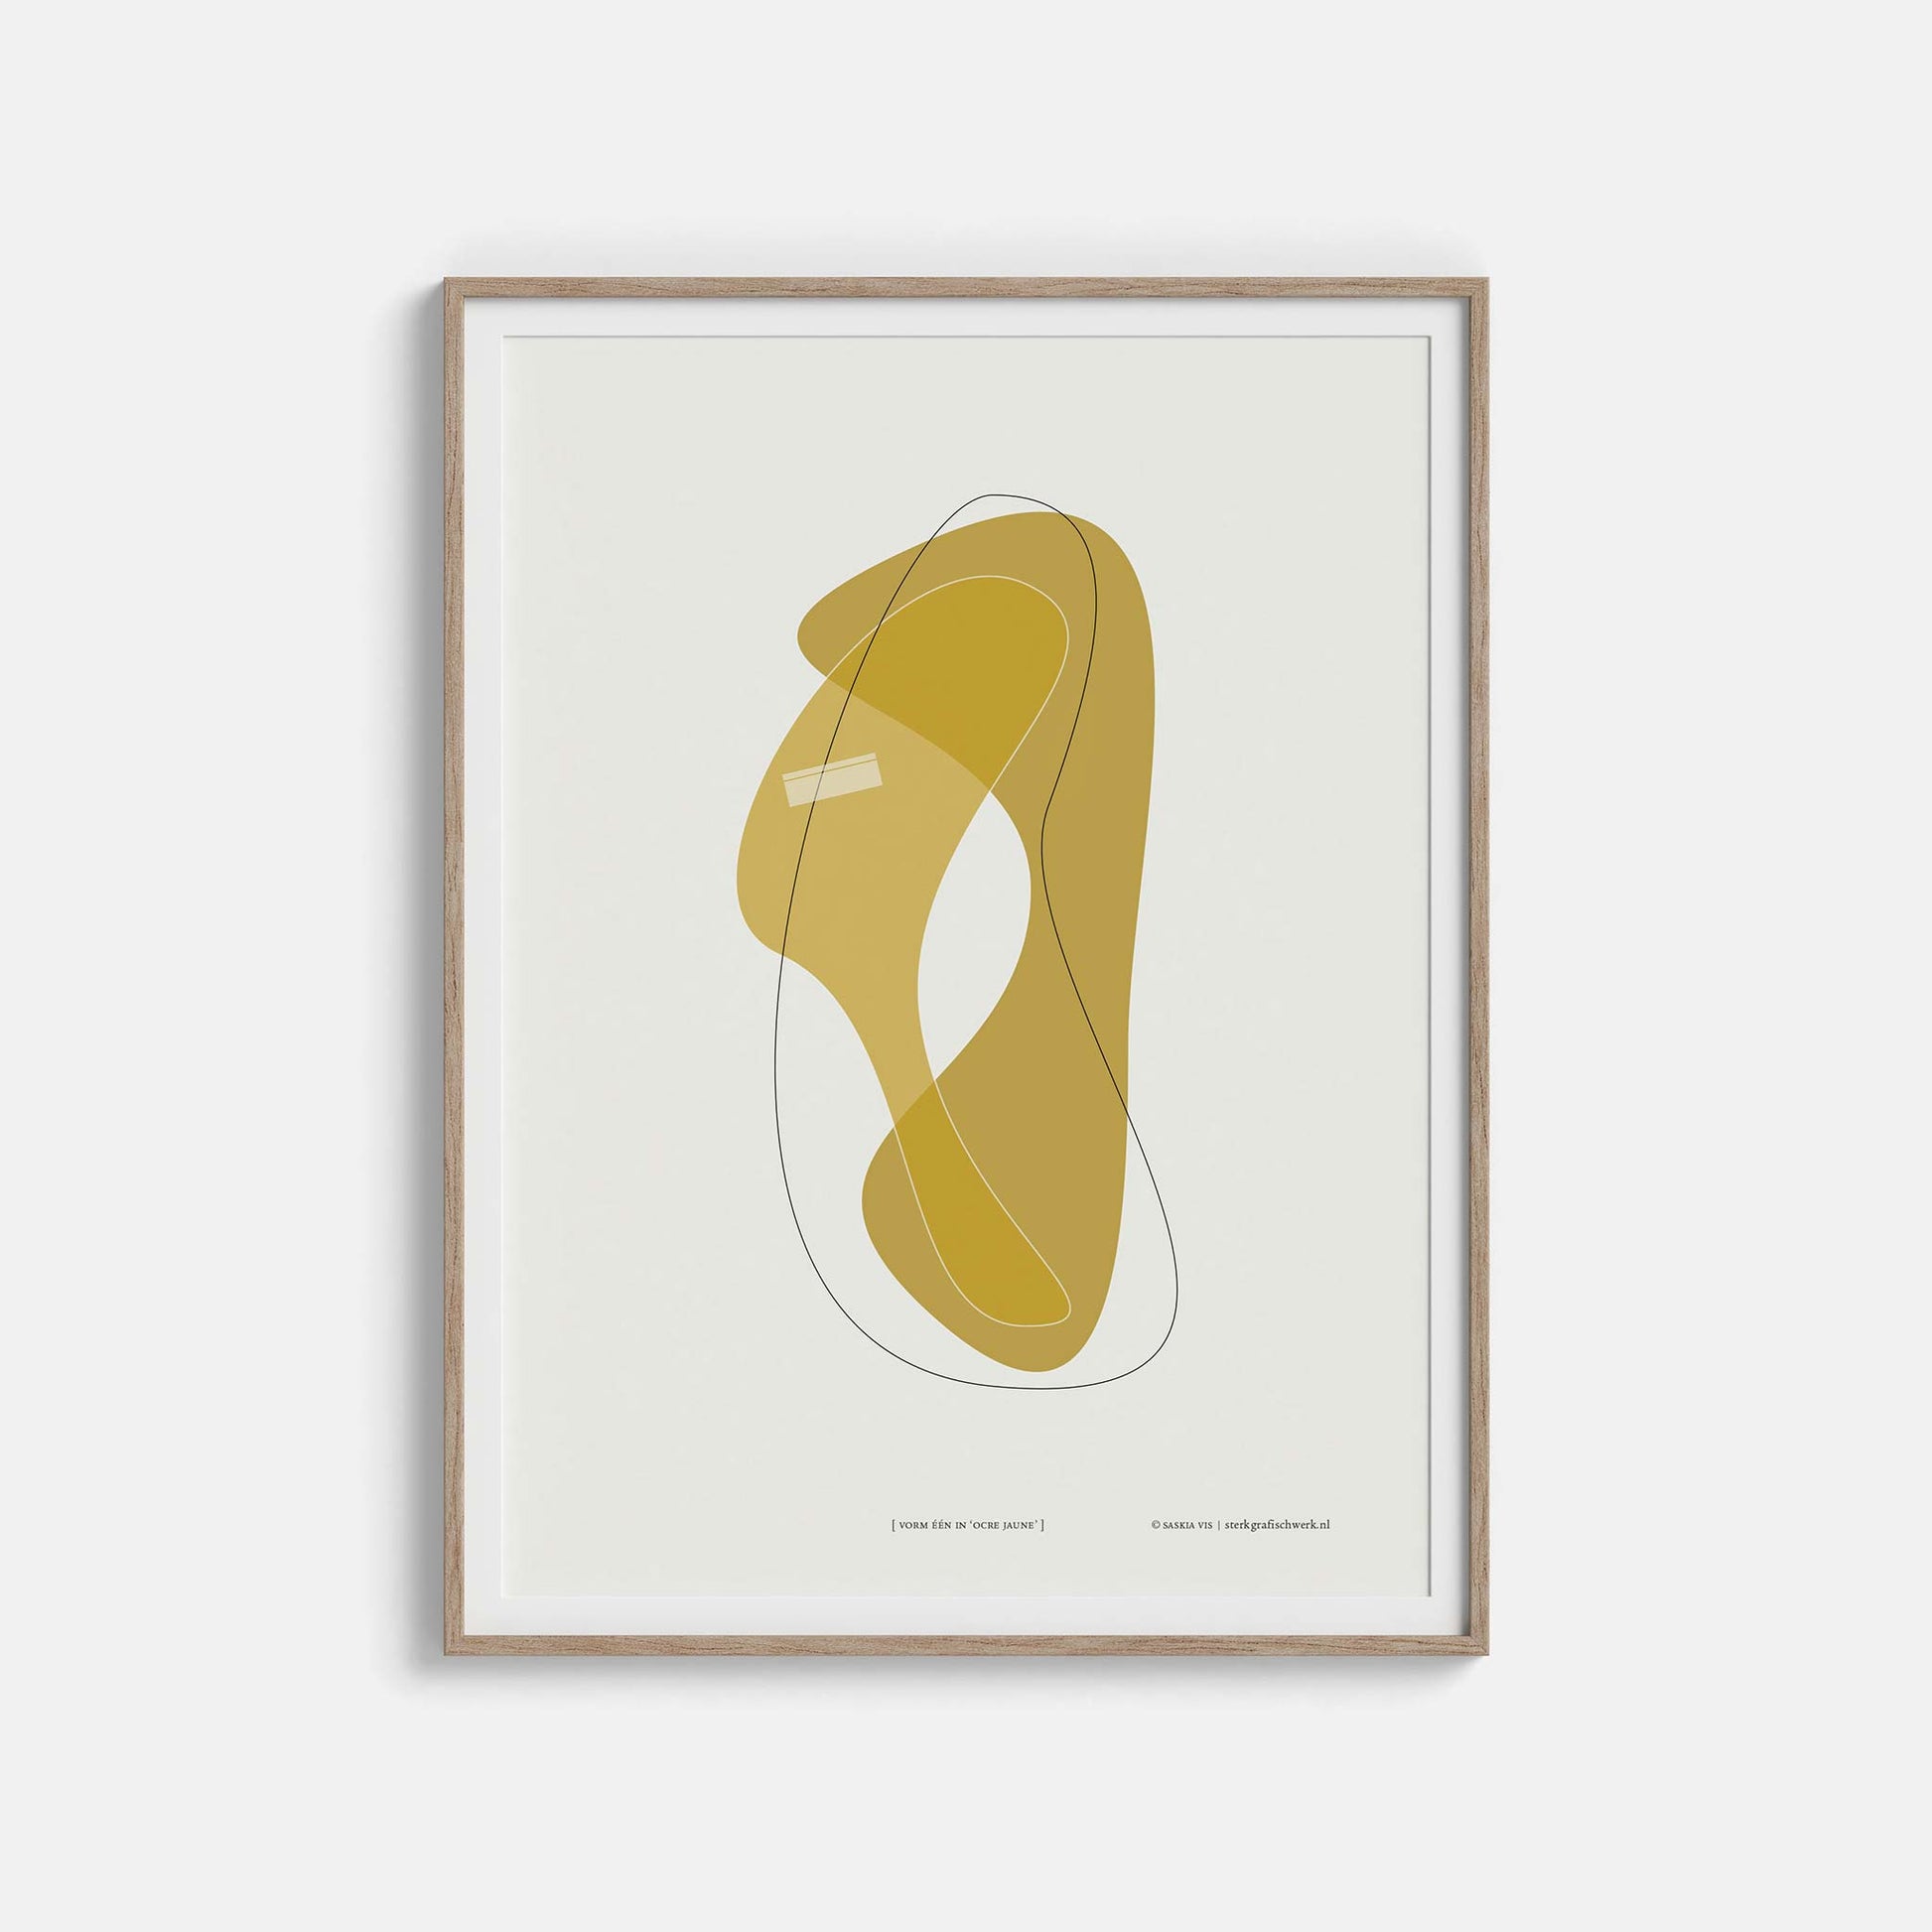 Productafbeelding, poster "vorm één in ocre jaune", foto impressie 3, in een houten lijst hangend aan een witte wand